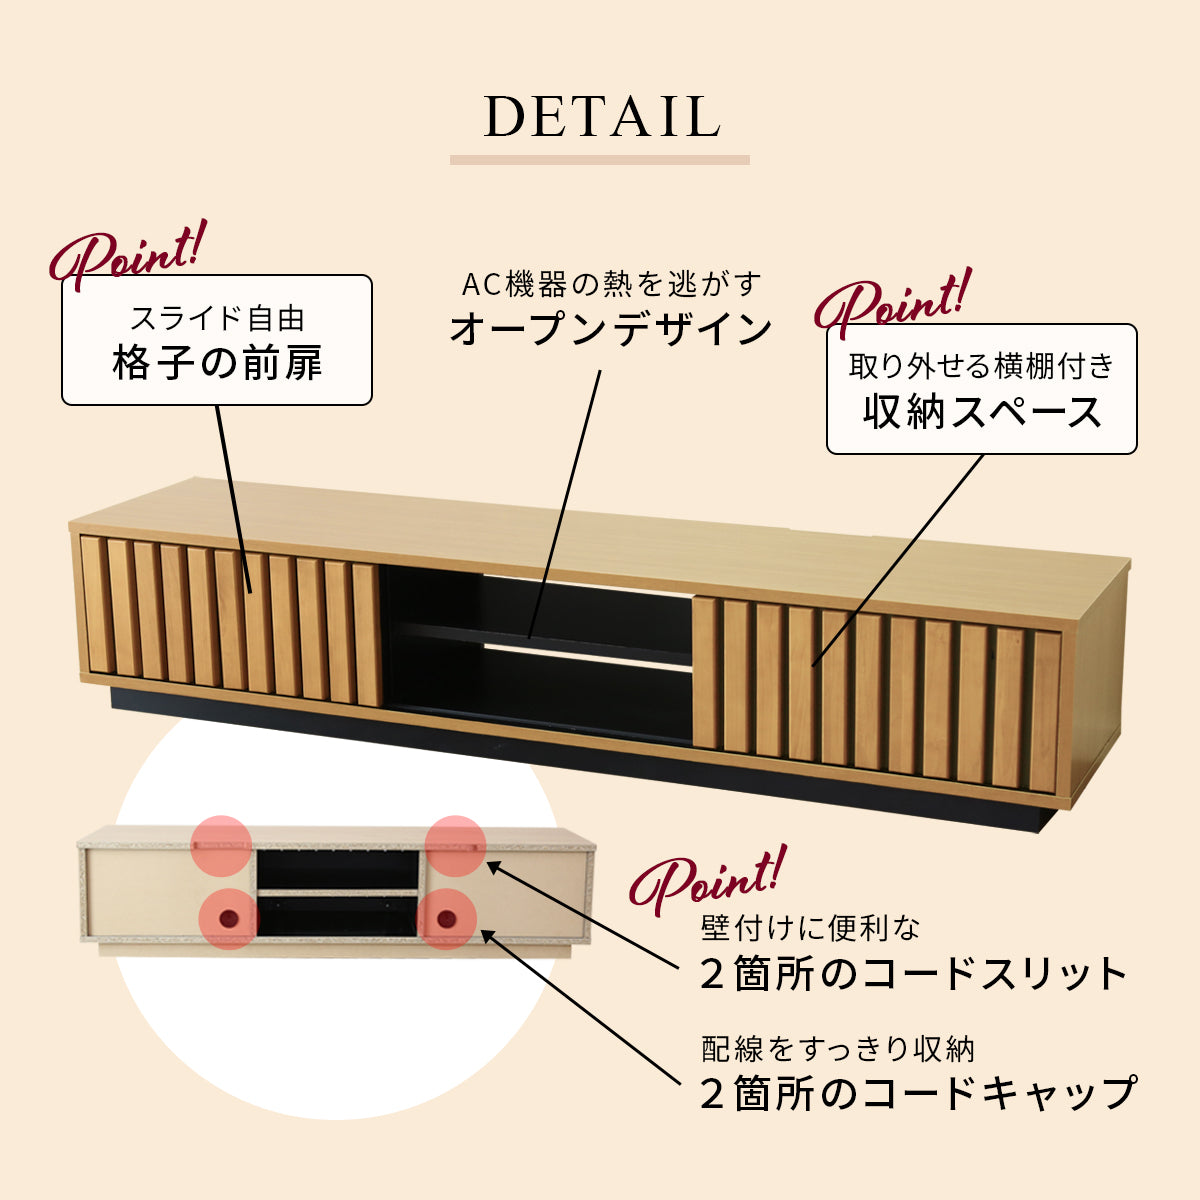 横幅180cm テレビ台 日本製 完成品 天然木 ローボード カナタ 180